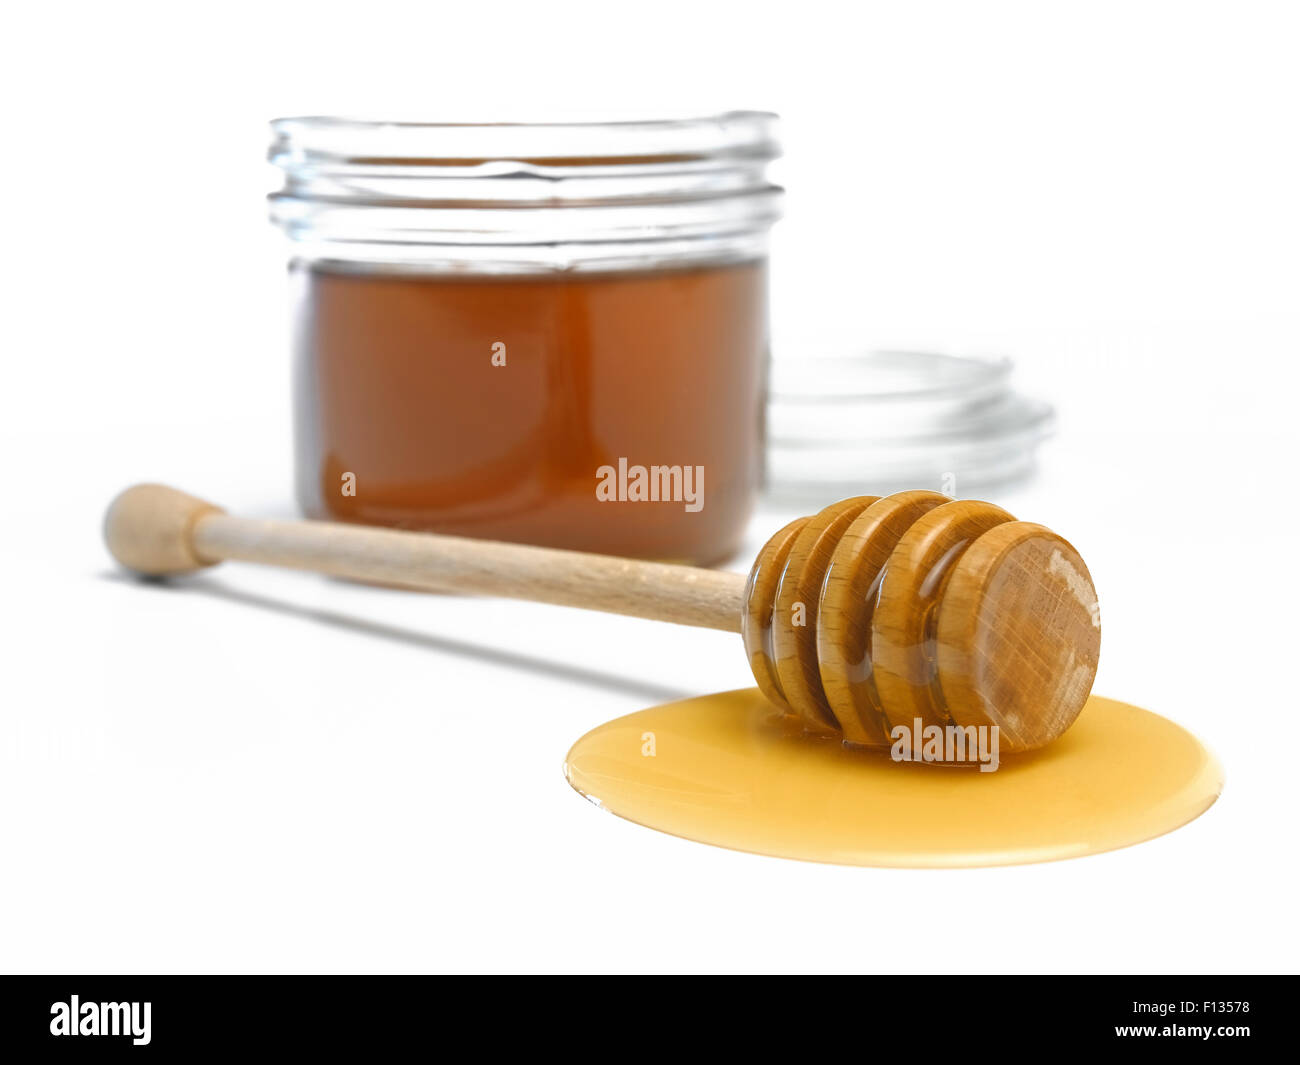 El penetrador con miel entreabierta llenas de miel Foto de stock